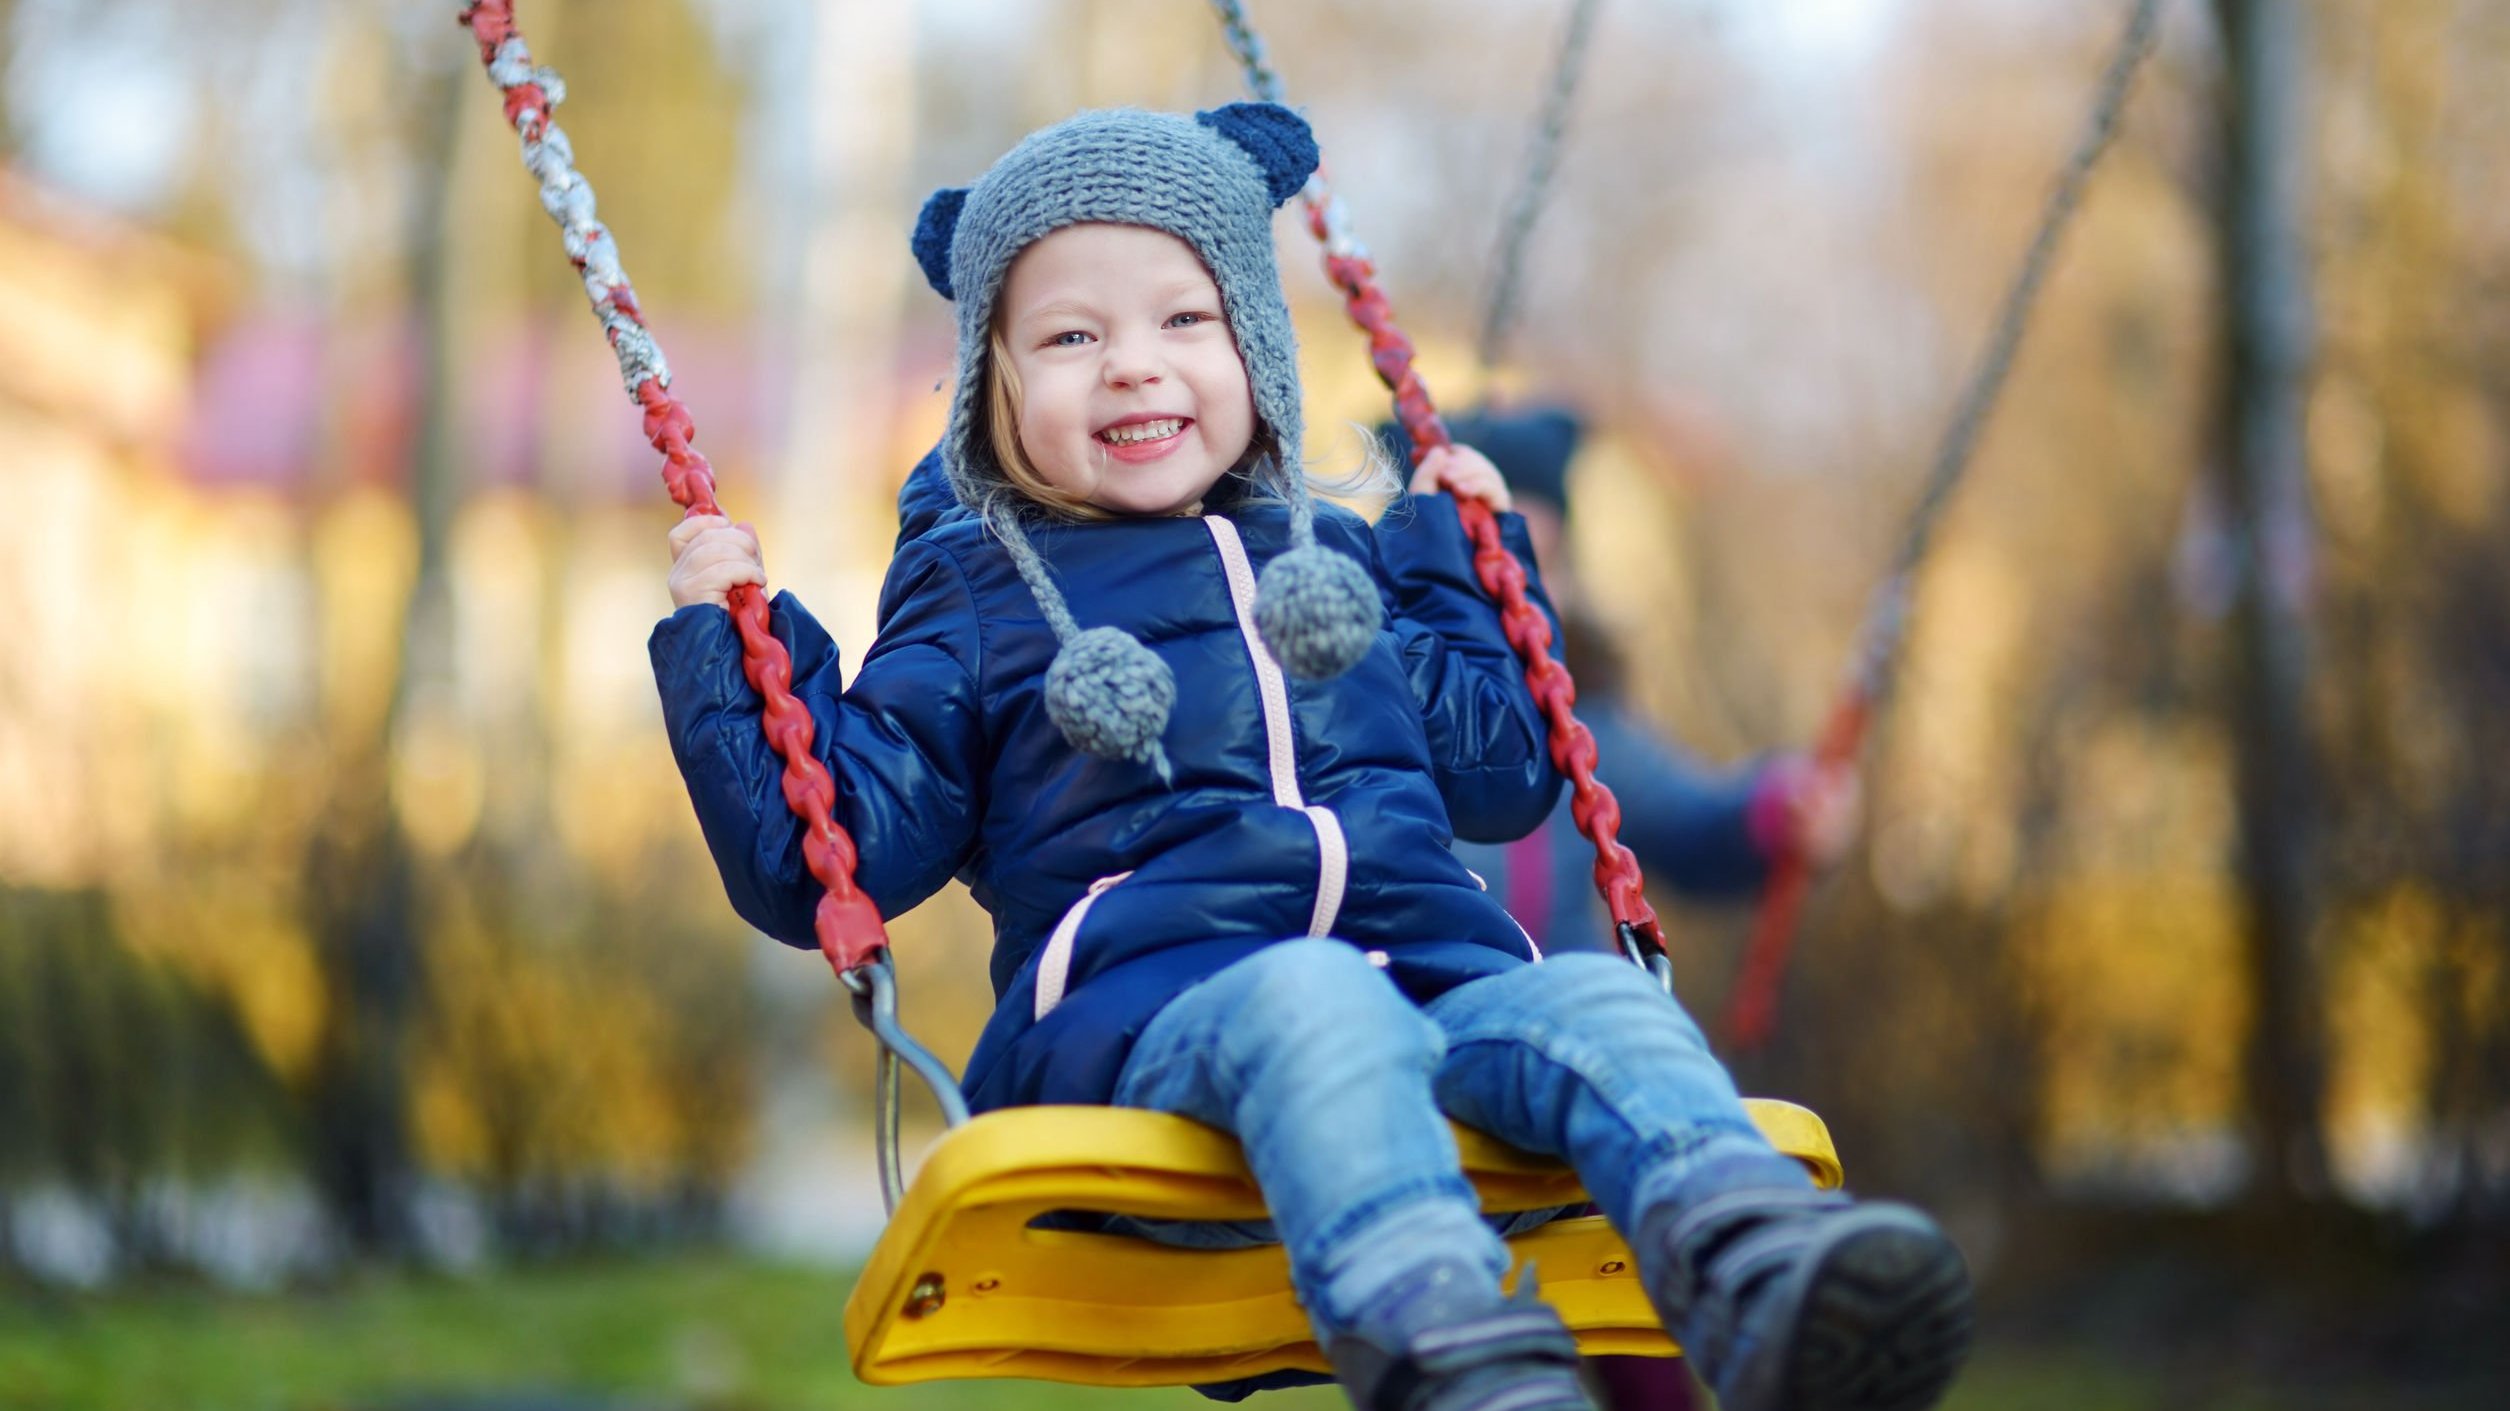 Criança menina com roupas de frio sorrindo enquanto brinca em um balanço